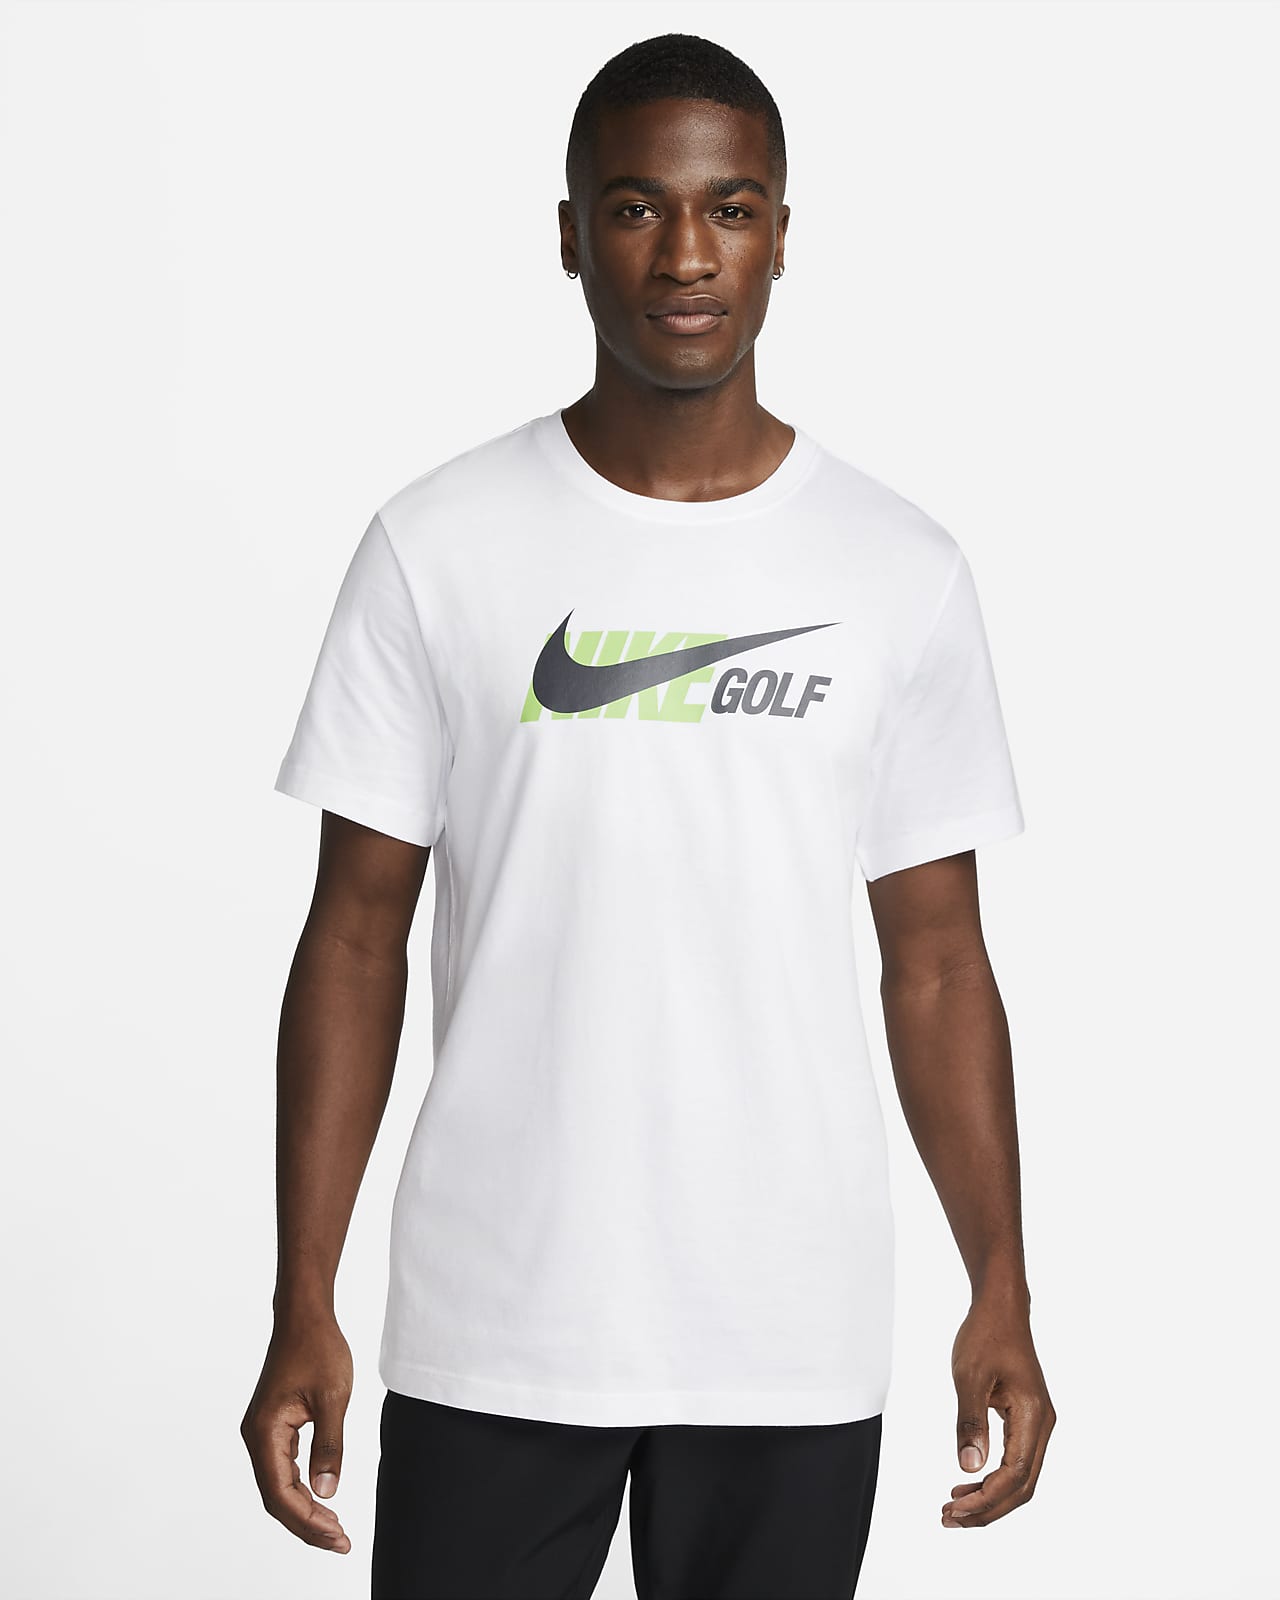 Nike Men's Golf T-Shirt. Nike LU